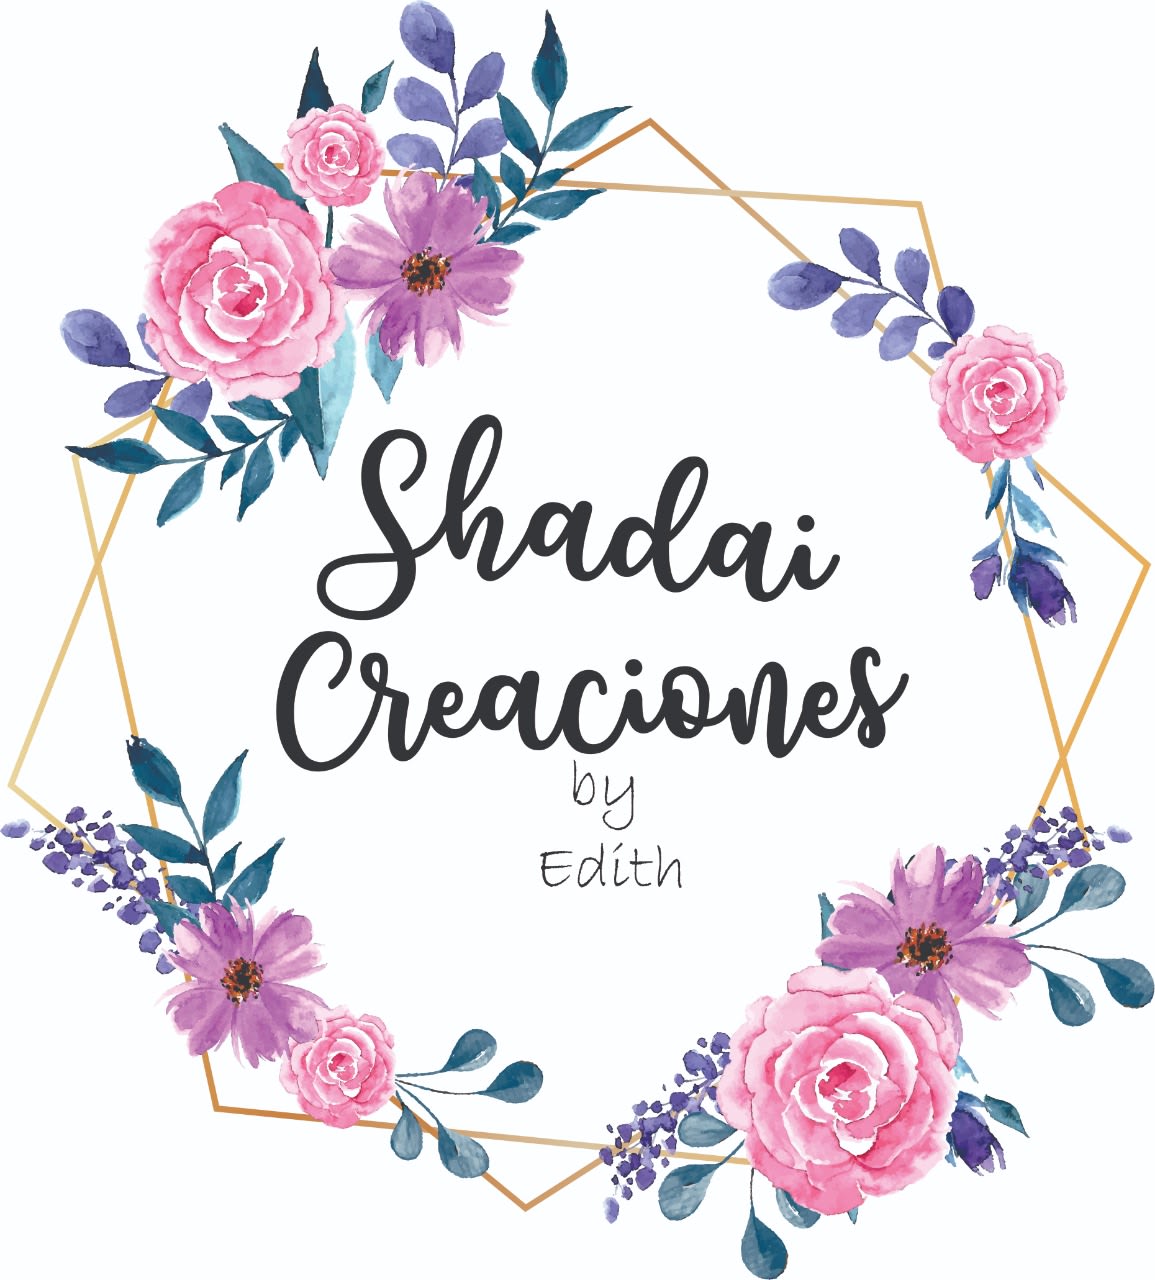 Shadai creaciones by Edith